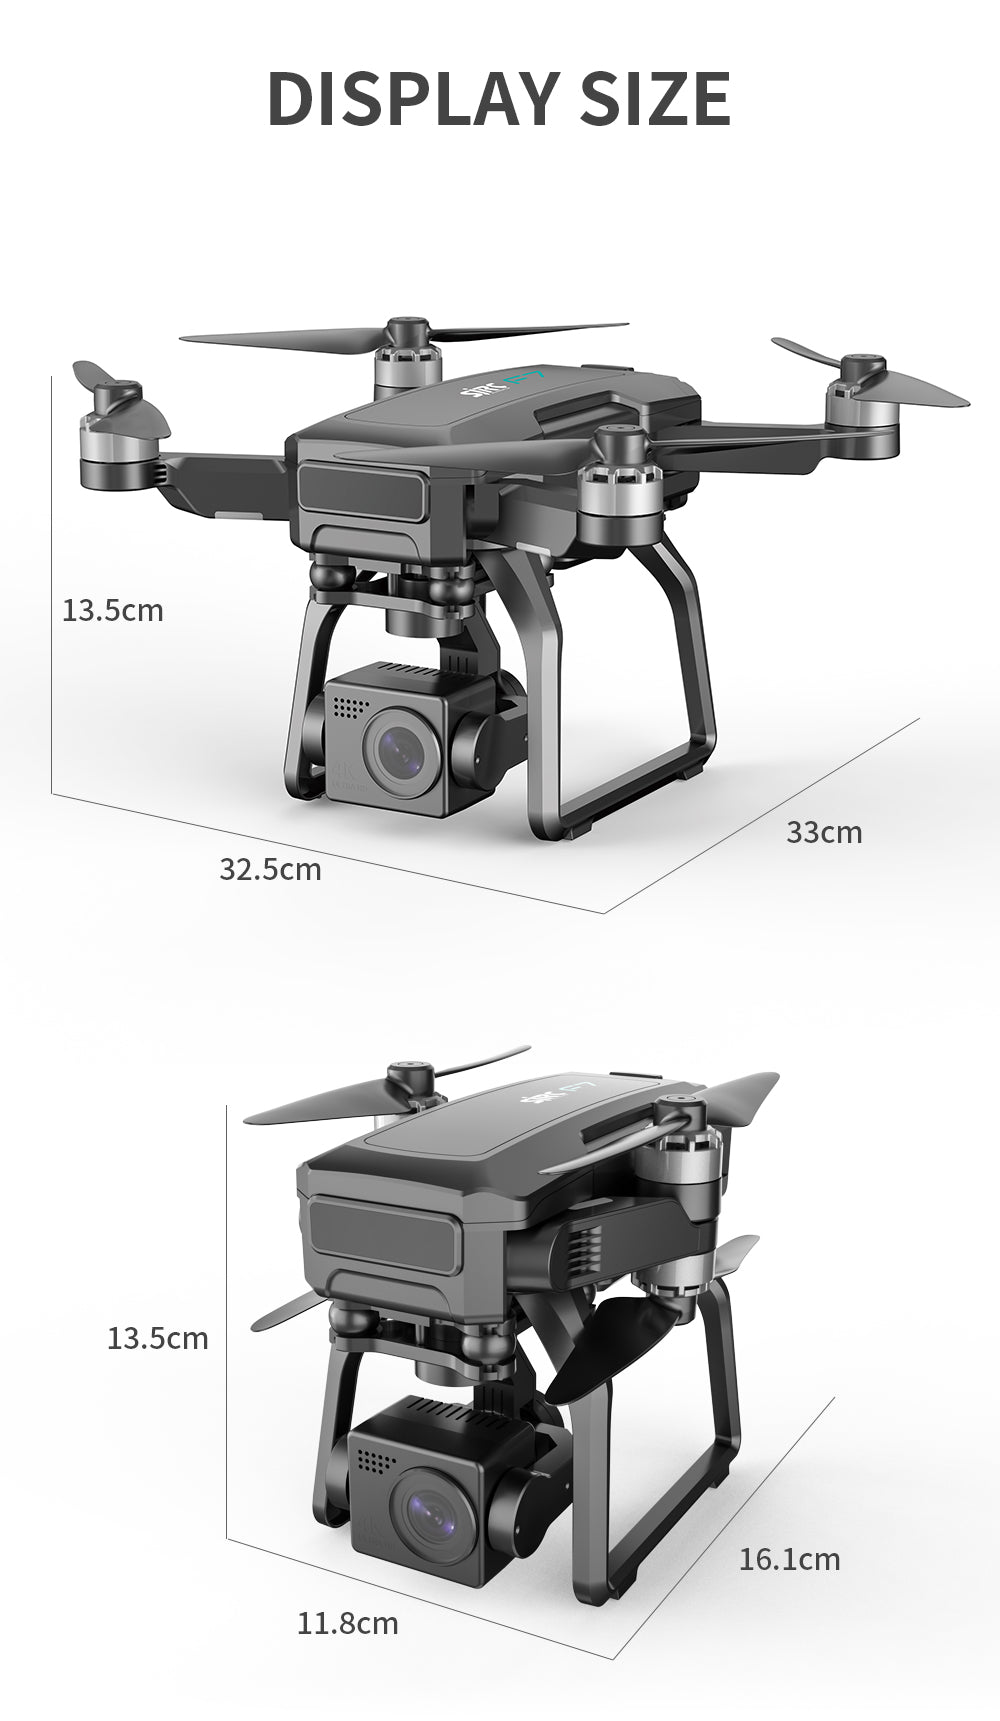 SJRC F7 PRO / F7S Pro Drone, DISPLAY SIZE 13.Scm 33cm 32.5cm 13.S